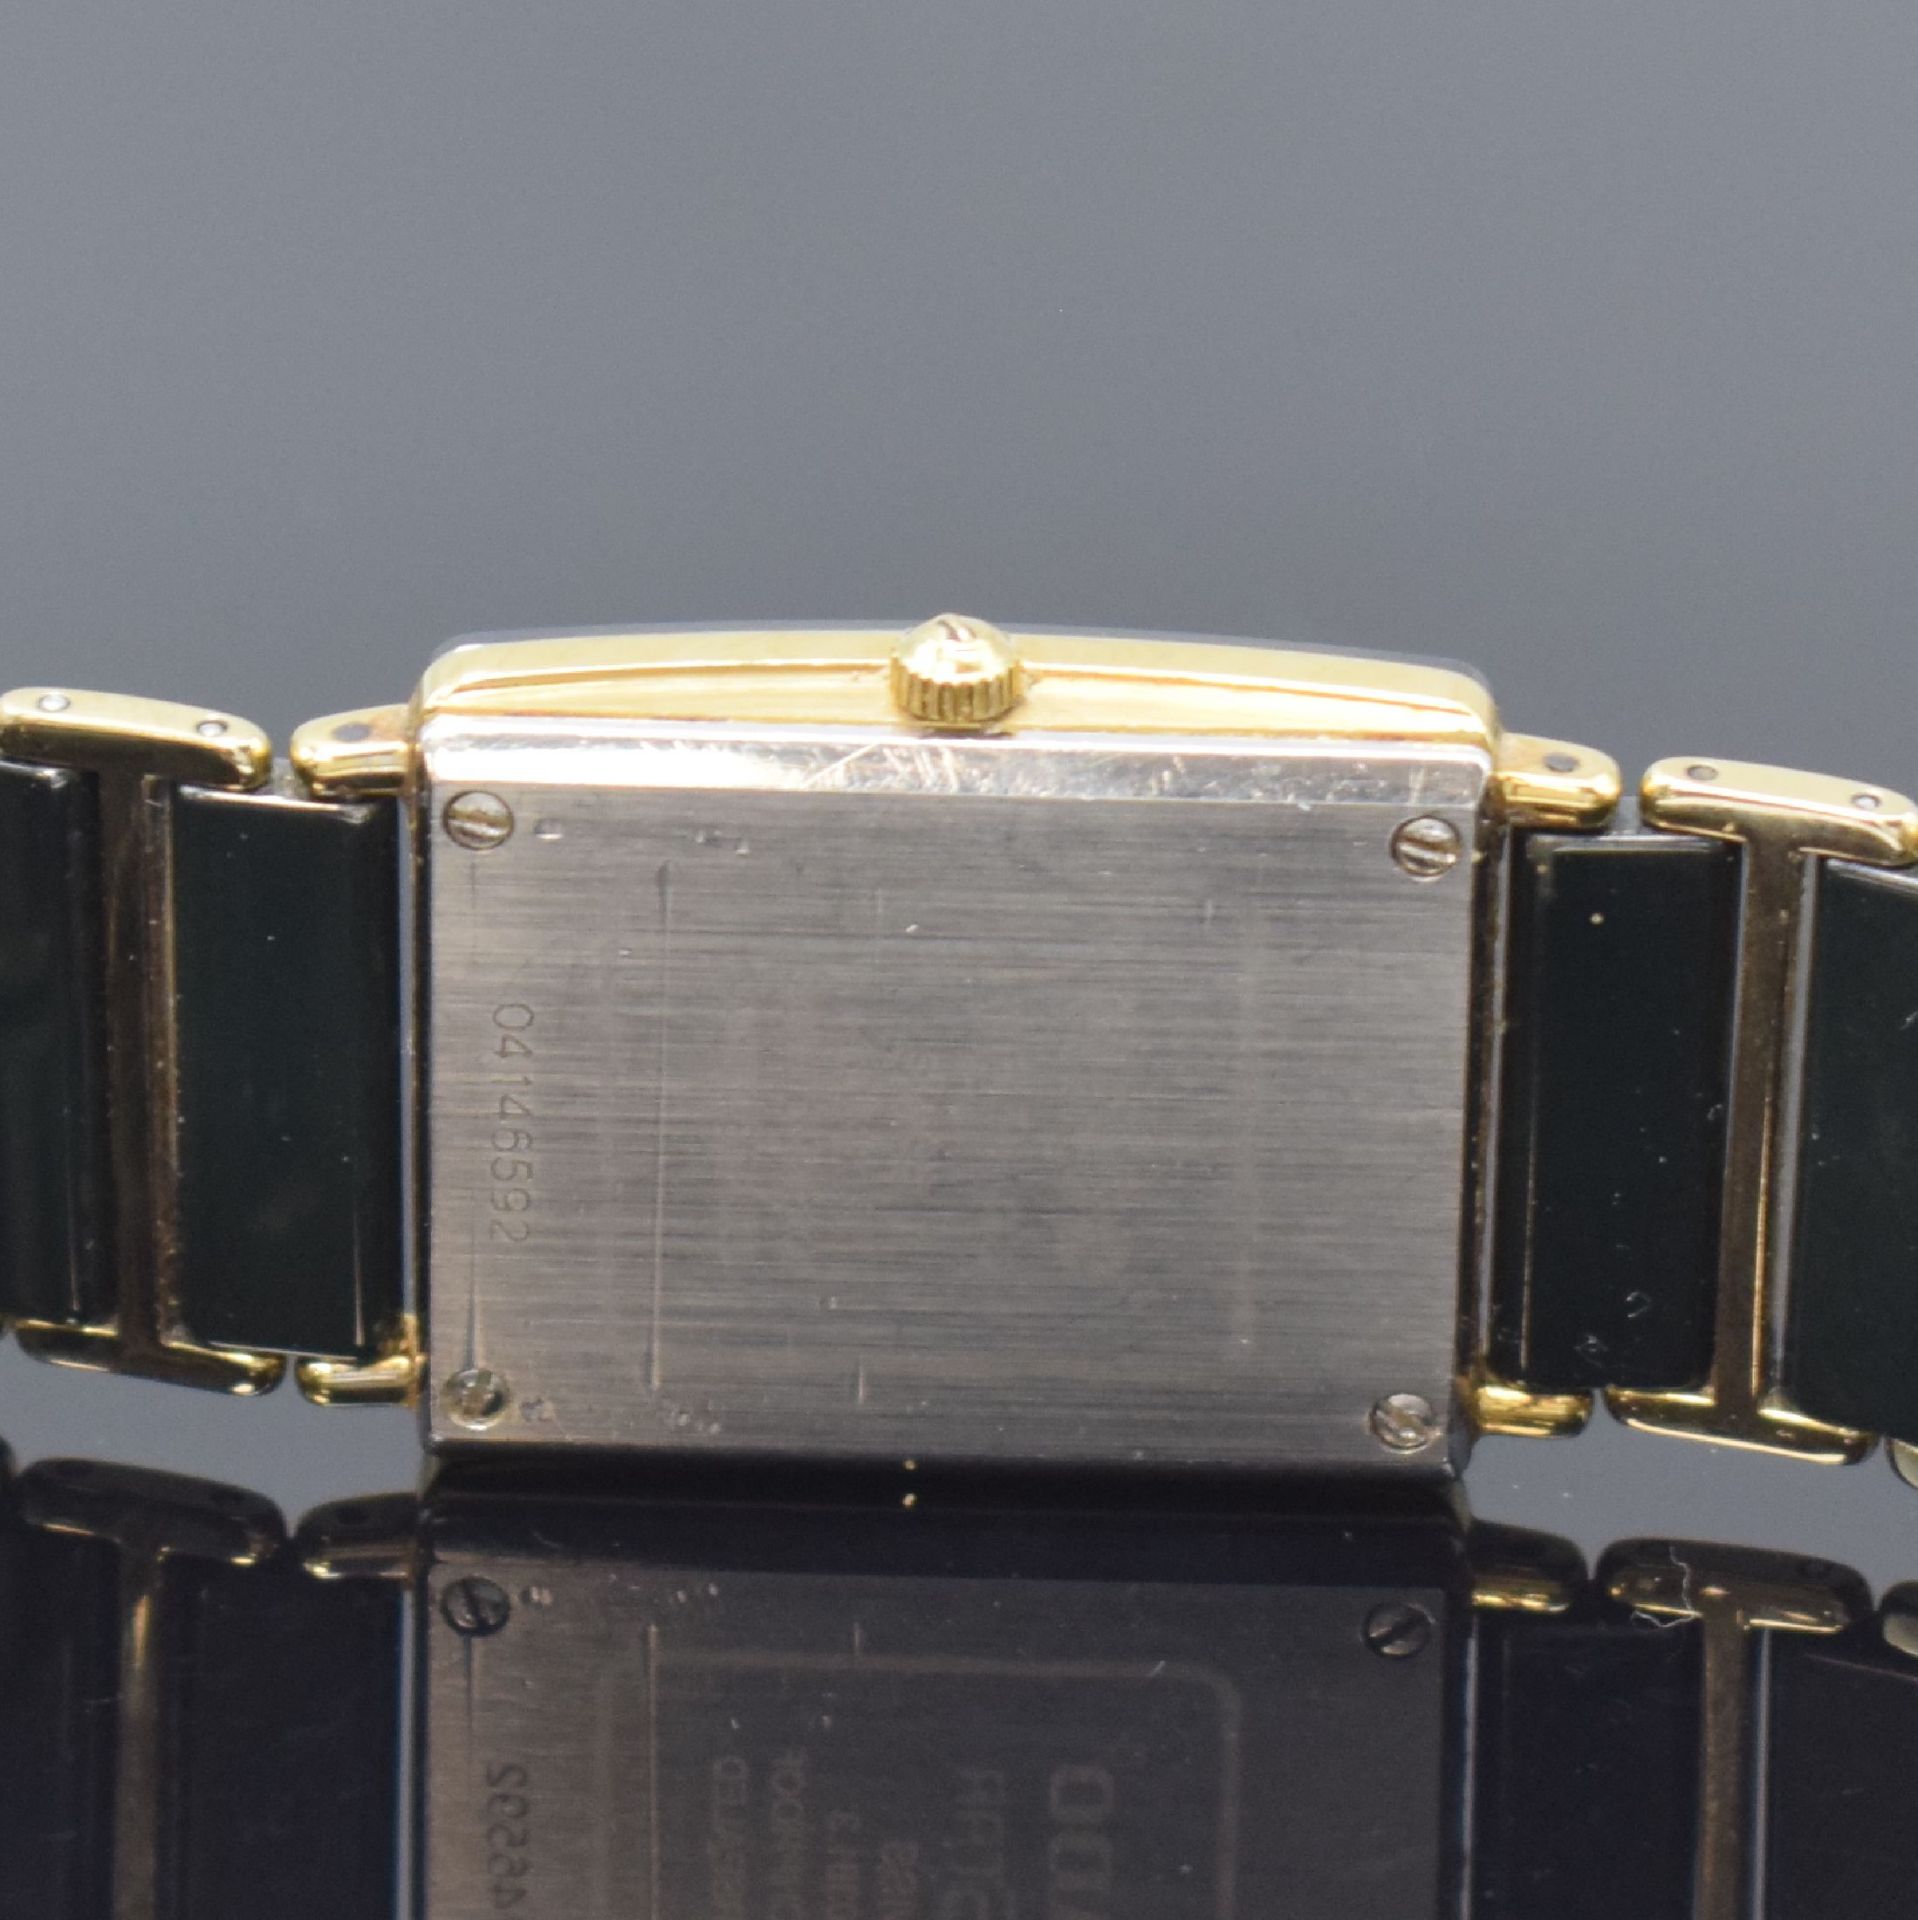 RADO Diastar Armbanduhr Referenz 160.0381.3, Schweiz um - Bild 5 aus 5